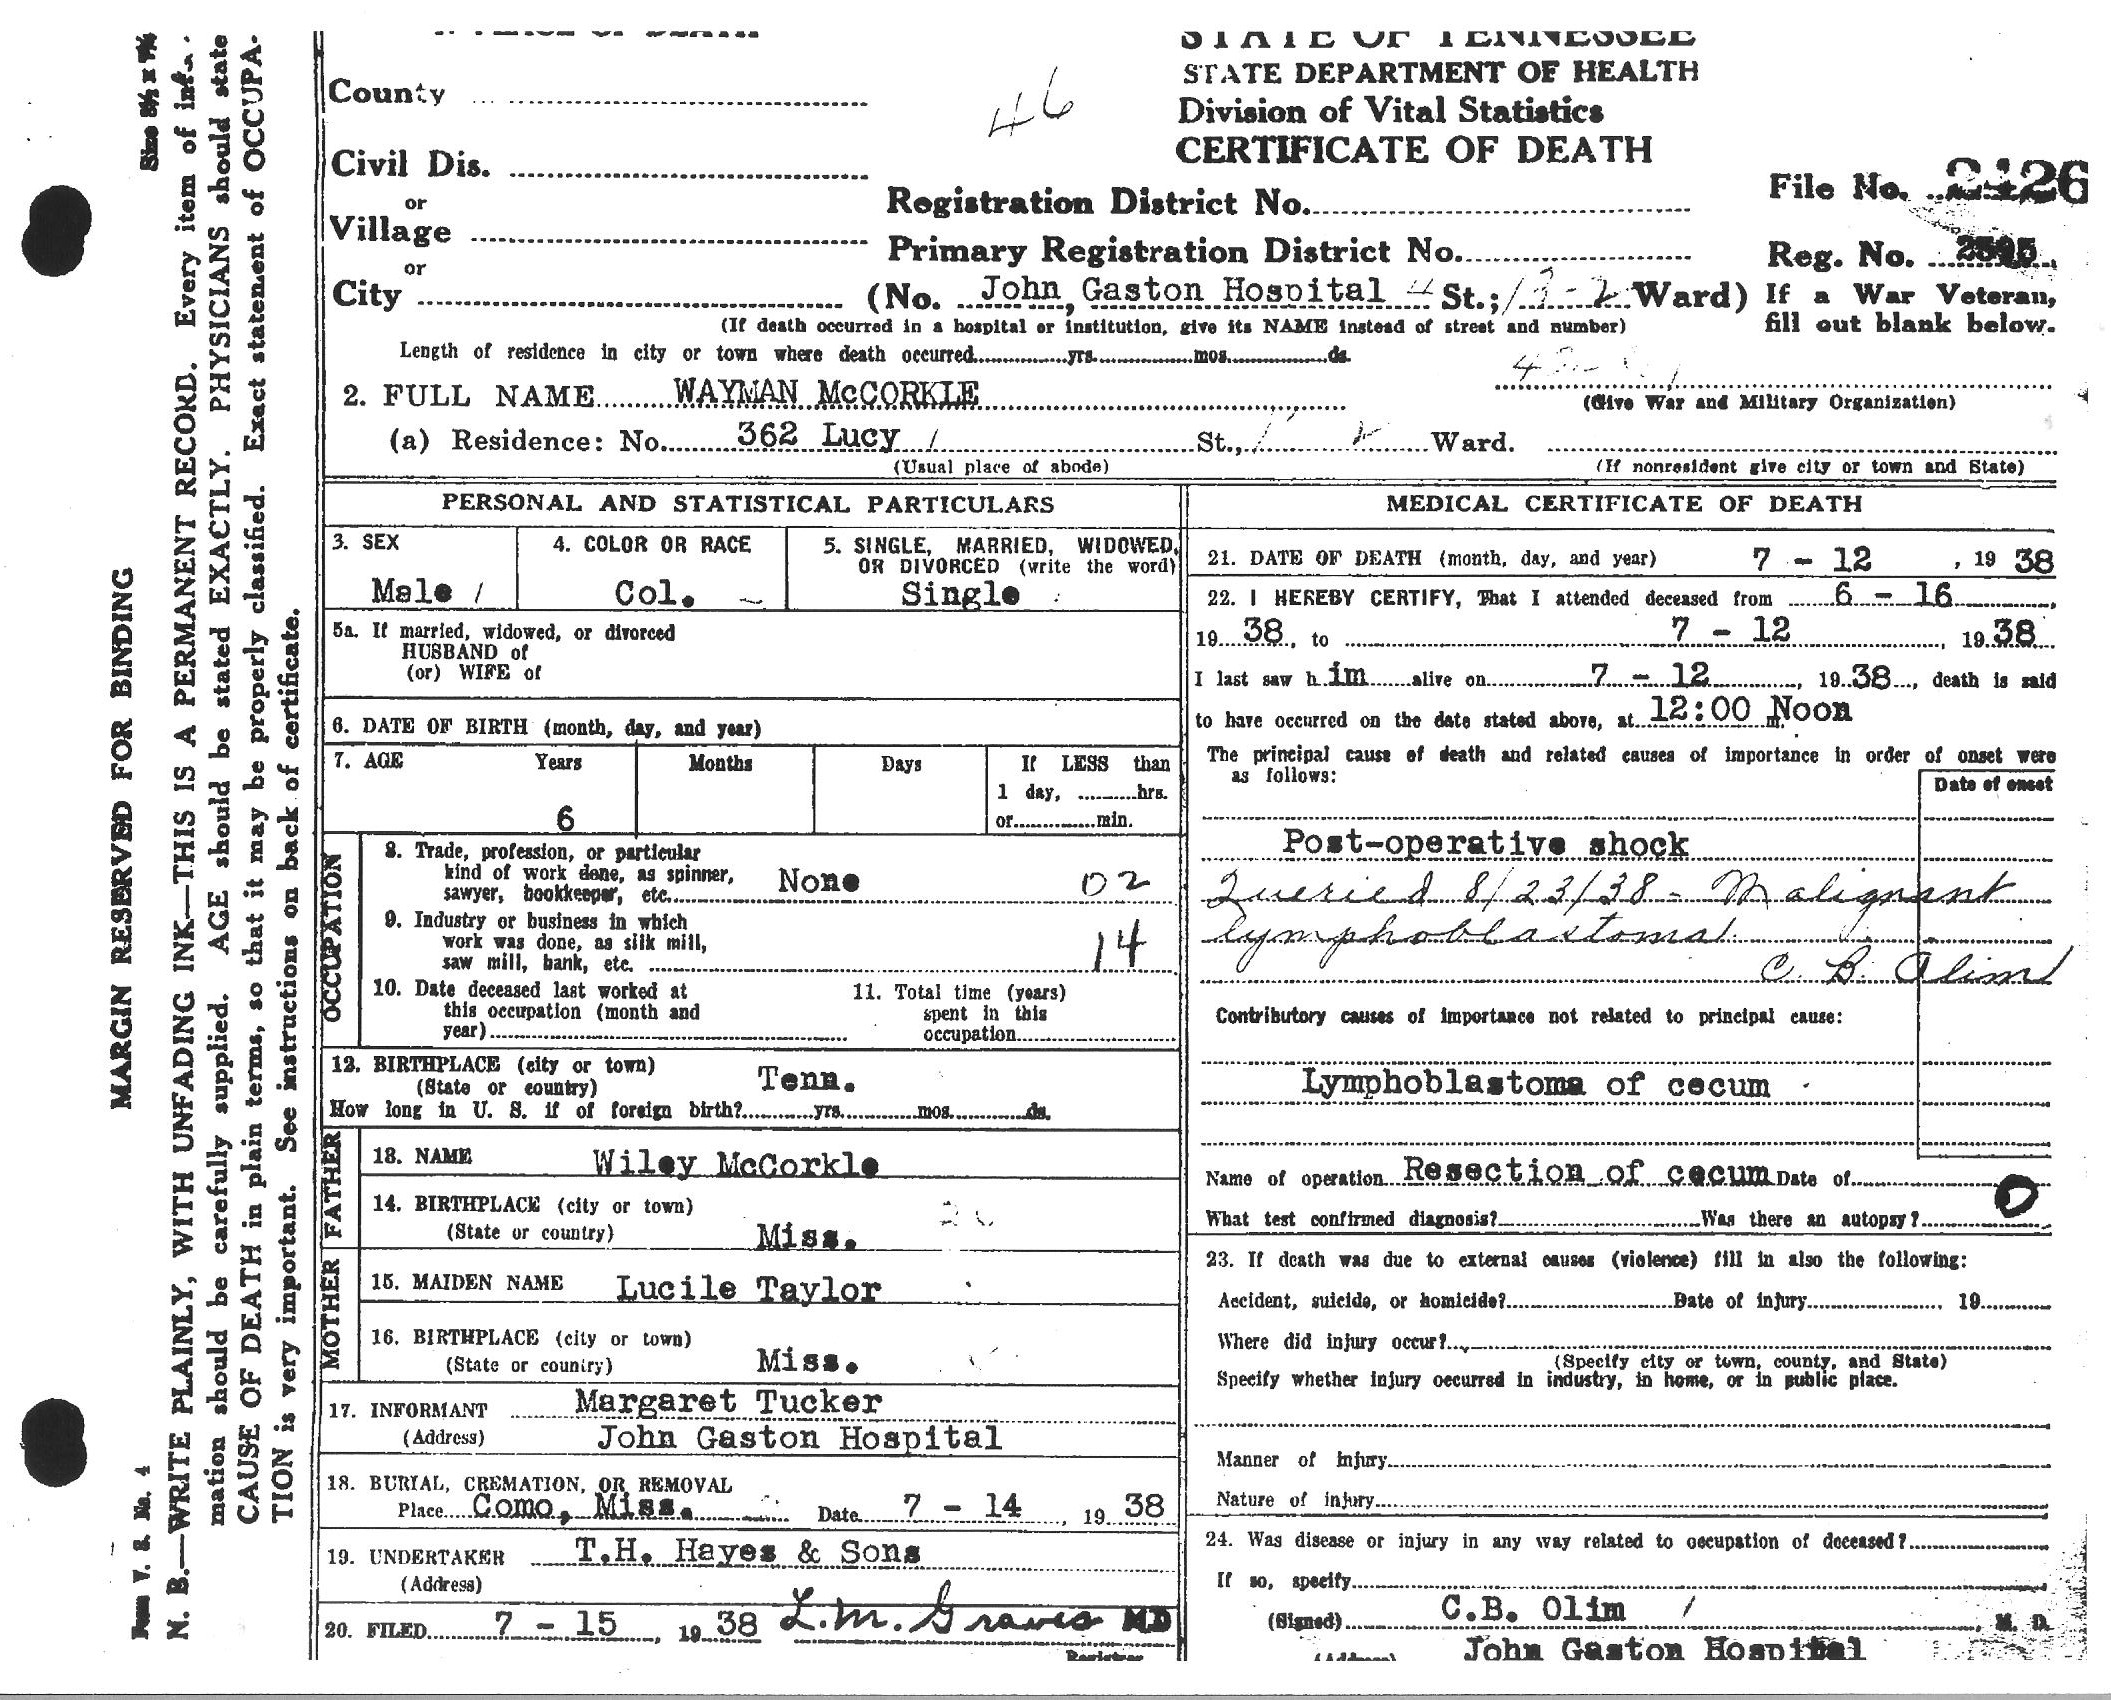 Wayman McCorkle's Death Certificate